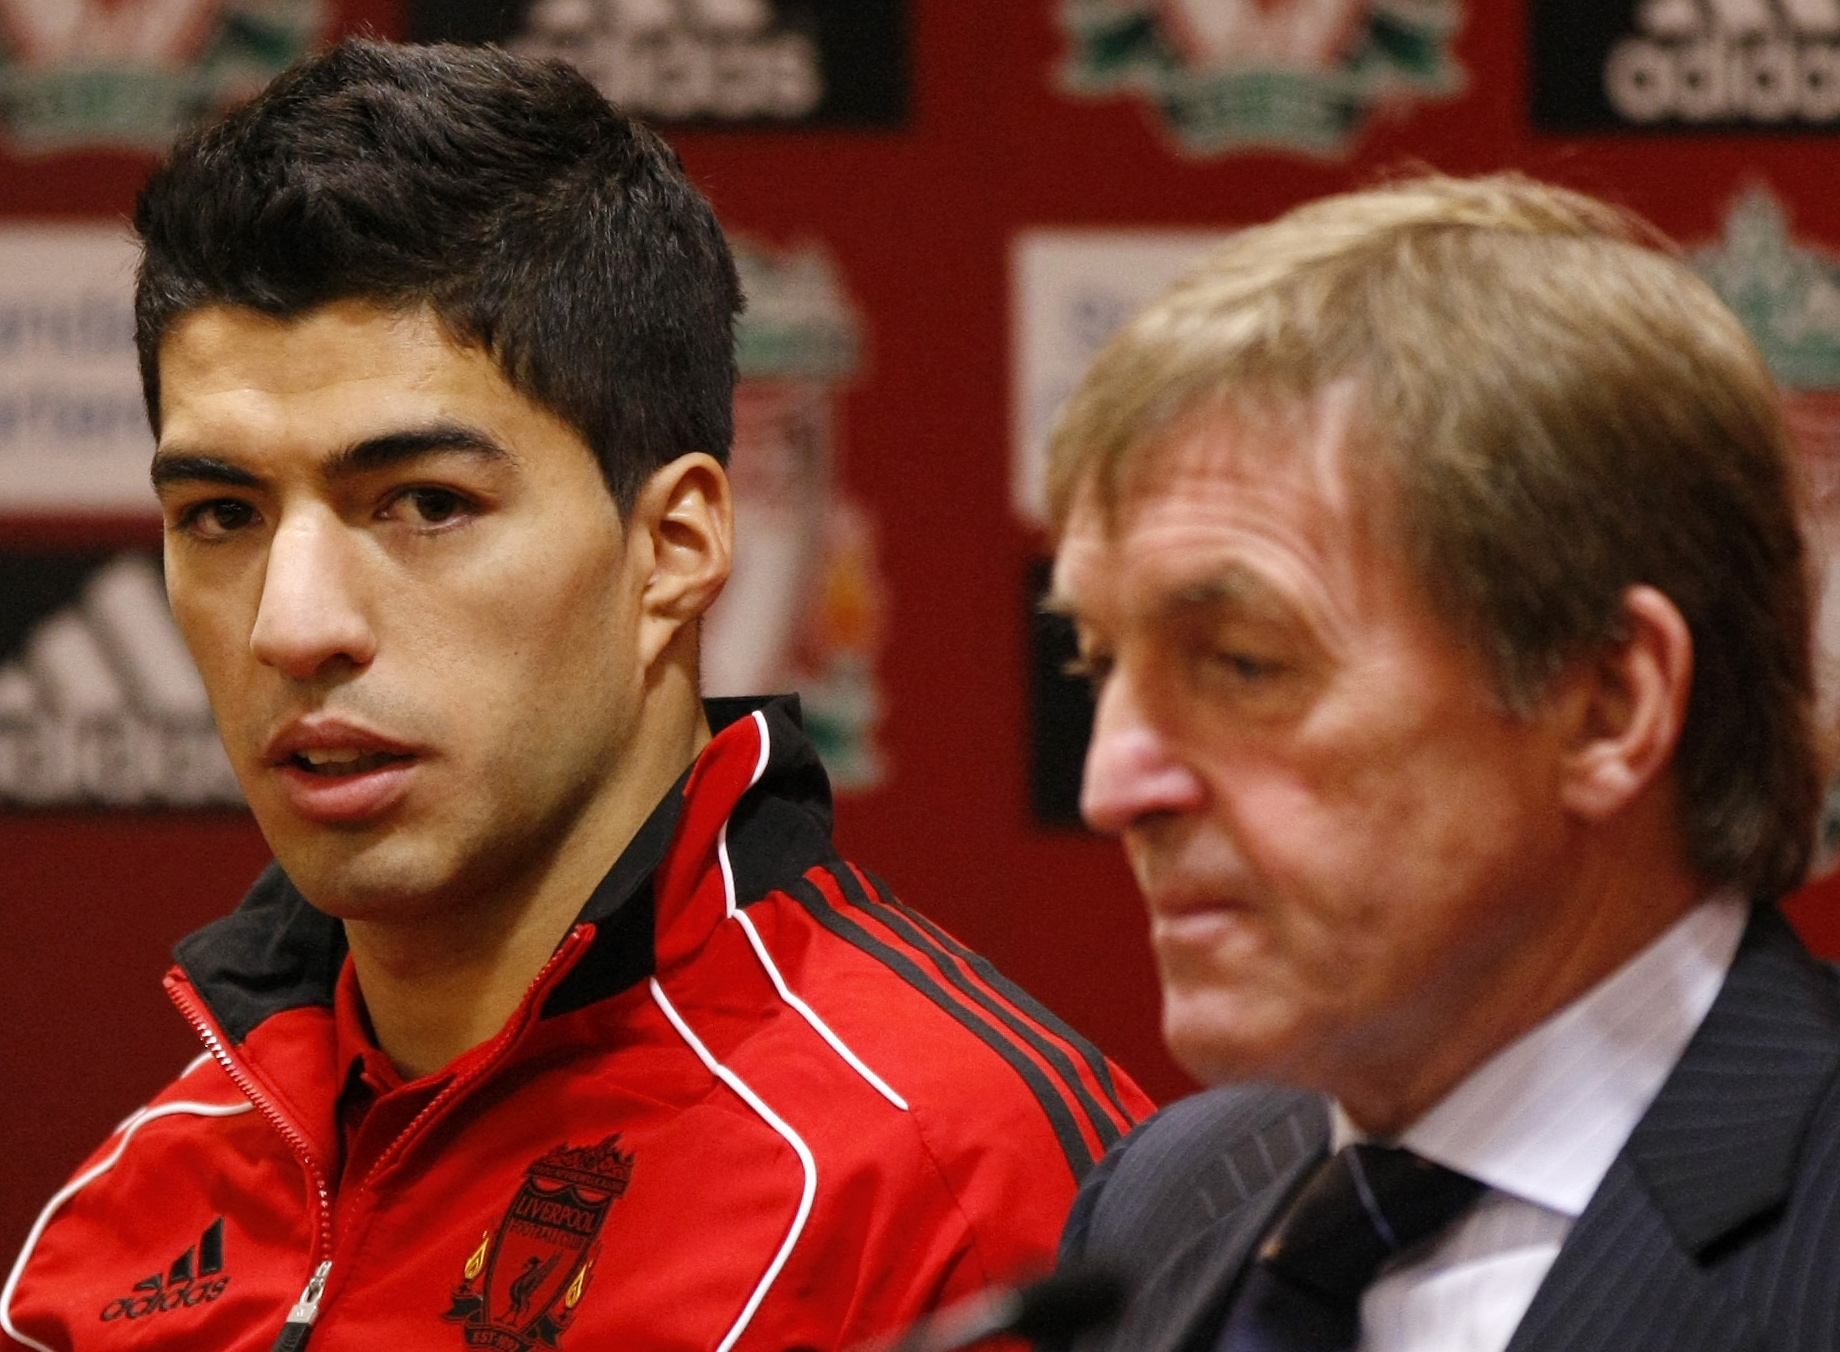 Liverpool har inte tagit avstång nog från Luis Suarez beetende menar organisationerna bakom det öppna brevet. 